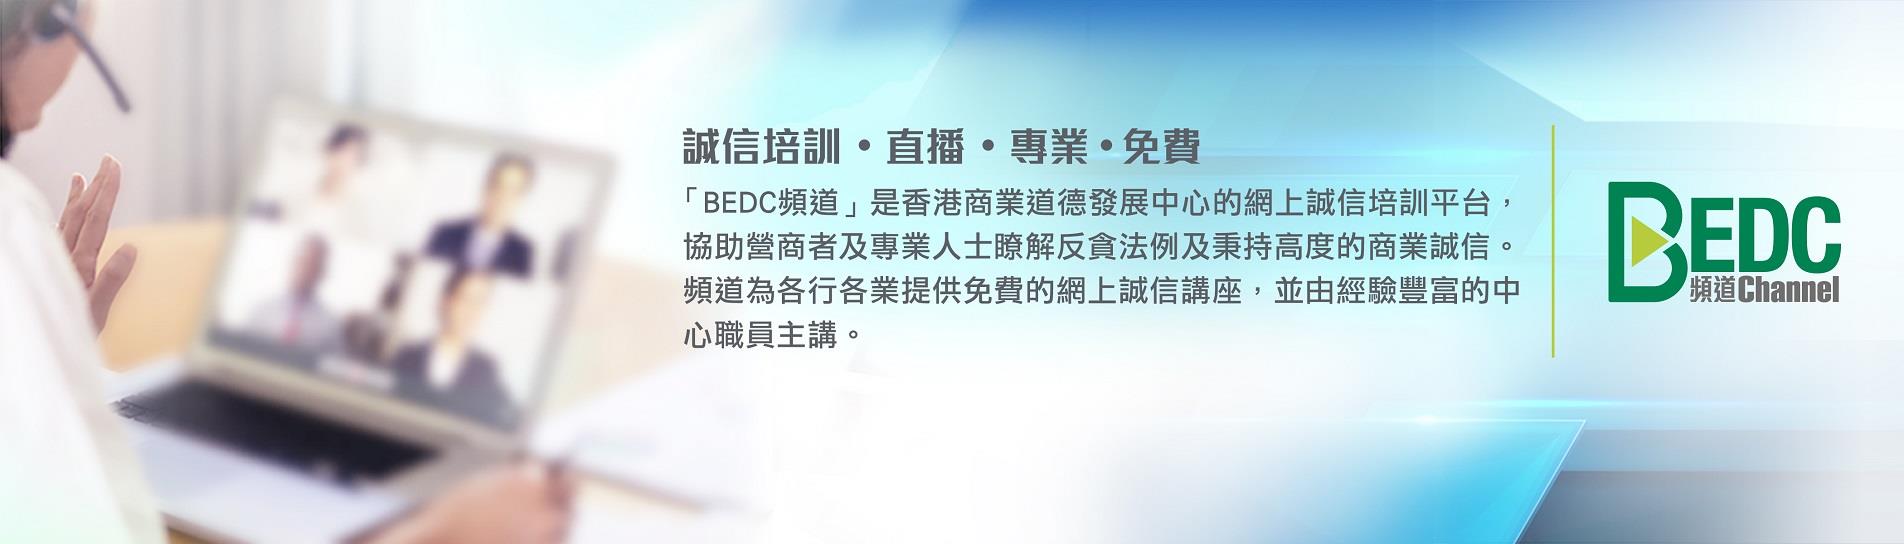 「BEDC 頻道」是香港商業道德發展中心的網上誠信培訓平台，協助營商者及專業人士瞭解反貪法例及秉持高度的商業誠信。頻道為各行各業提供免費的網上誠信講座，並由經驗豐富的中心職員主講。